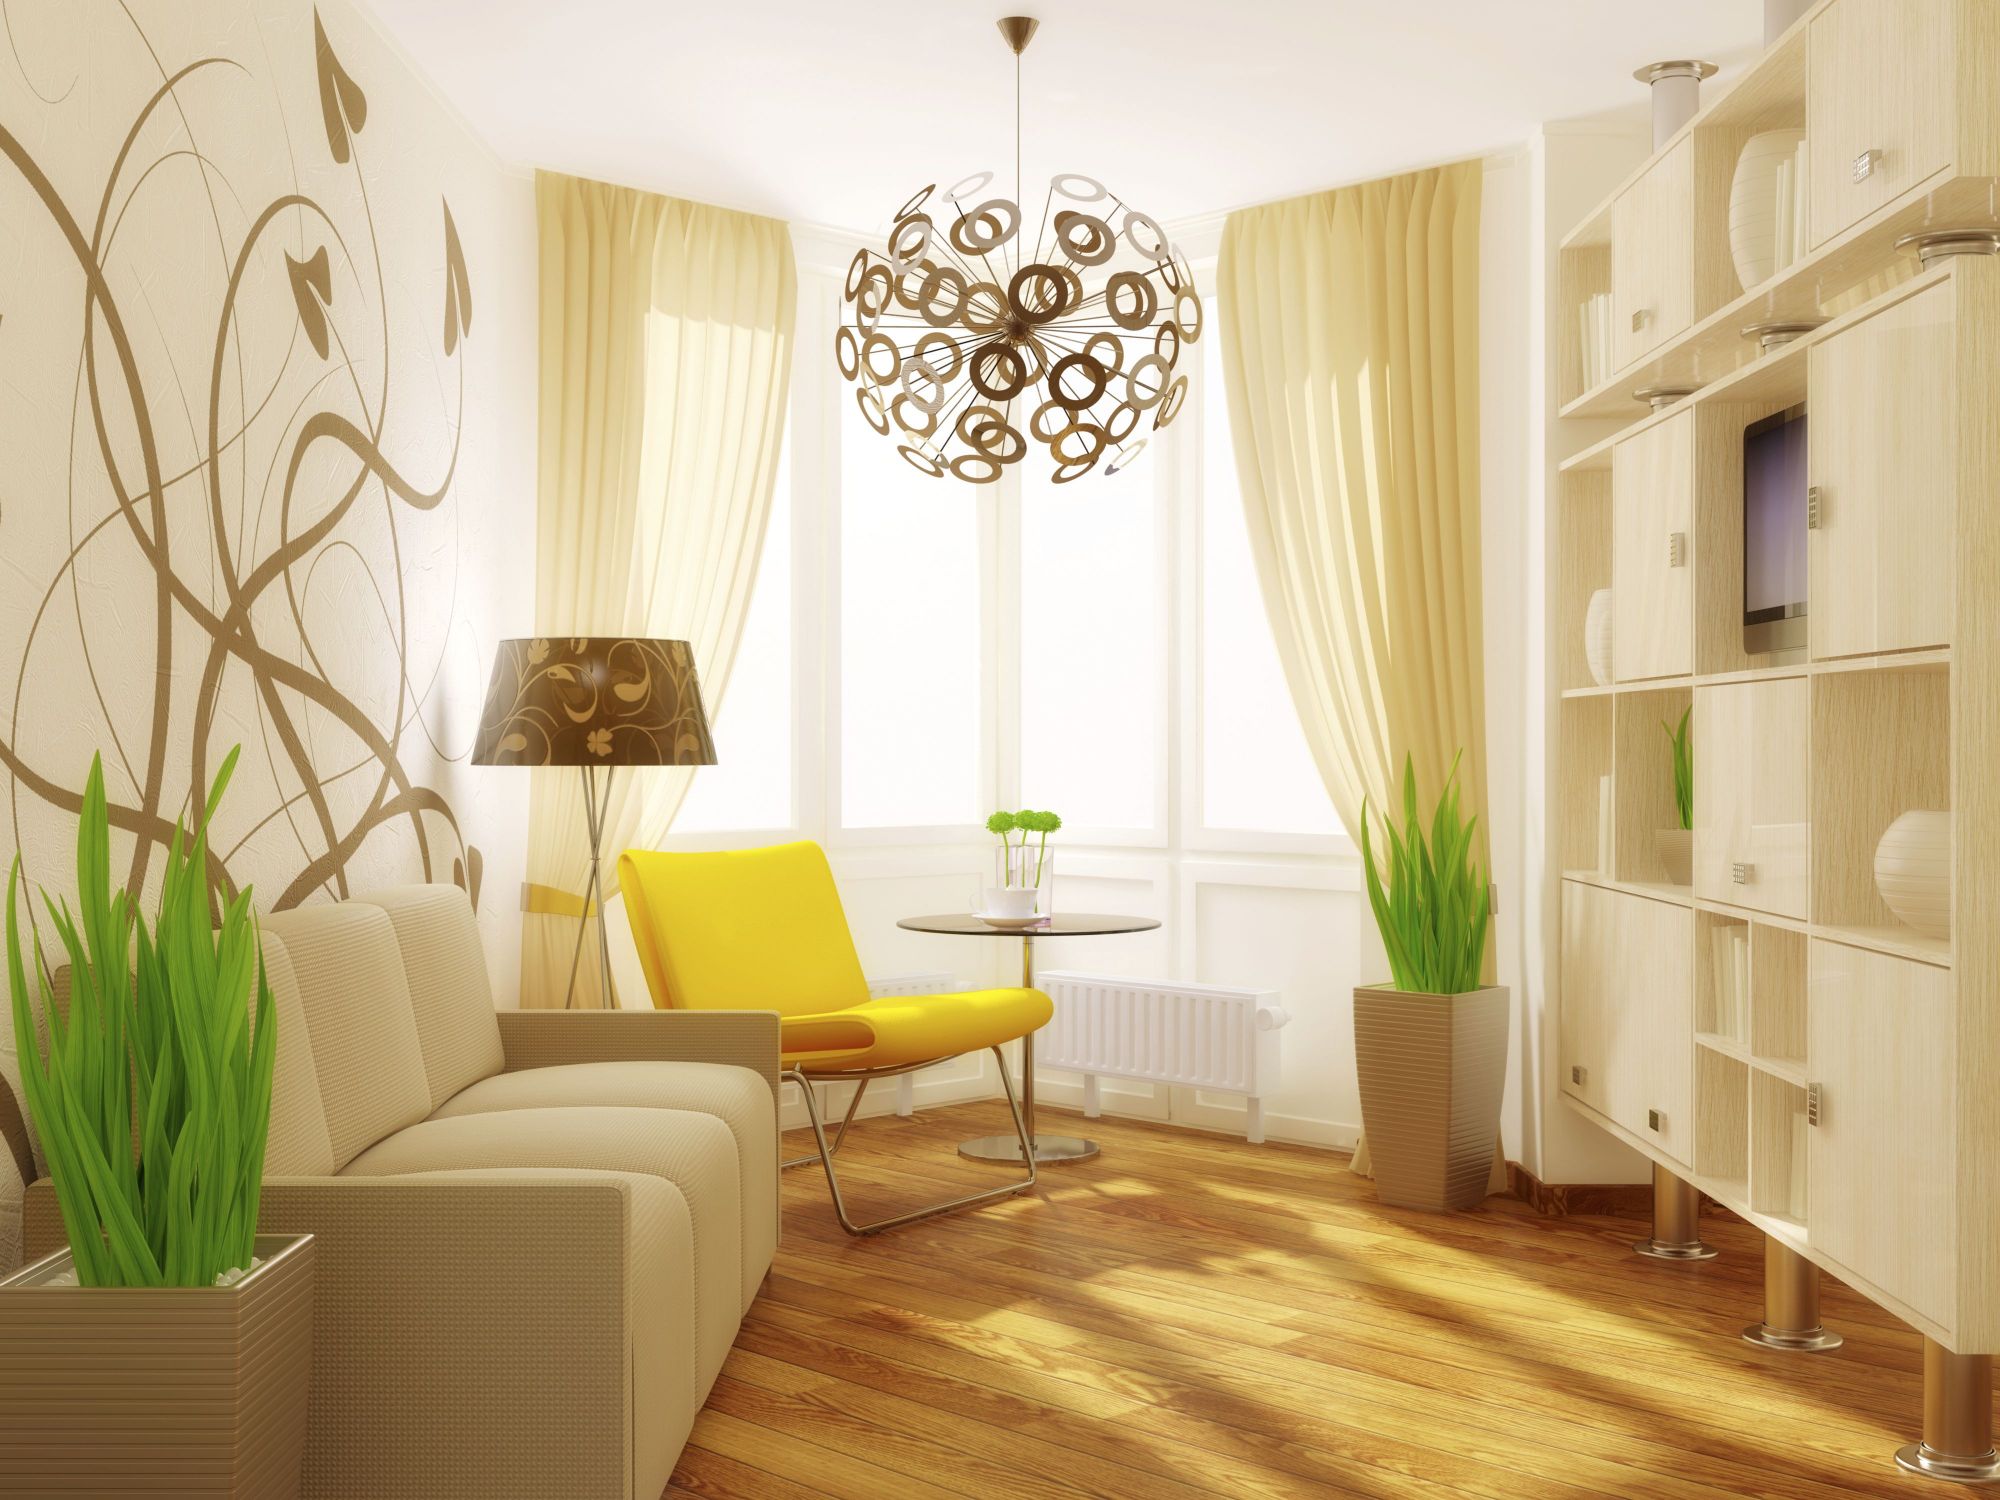 Thiết kế màu sắc nhẹ nhàng của phòng khách giúp cho ngôi nhà cấp 4 diện tích nhỏ thêm phần thoáng đãng, rộng rãi